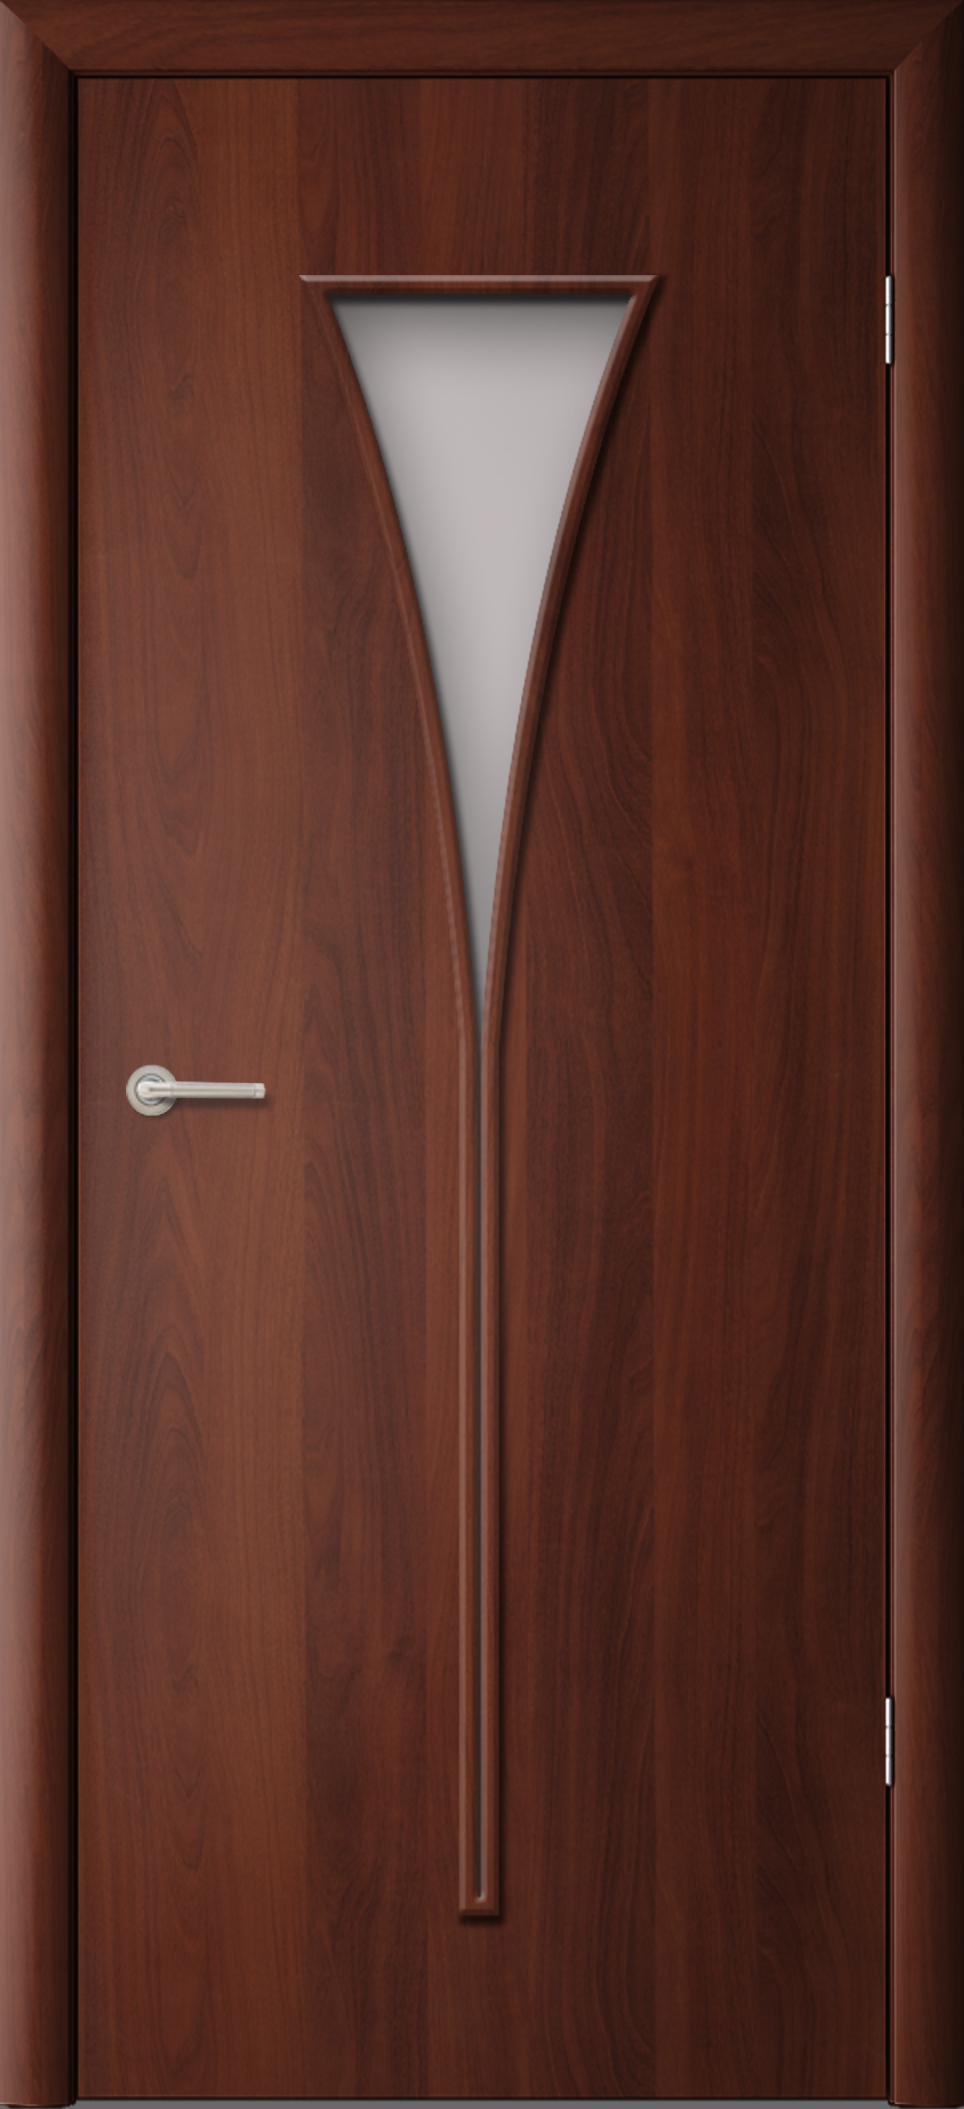 Двери - модель Рюмка, покрытые ламинатной пленкой. Компания Фрегат - Впечатляющее список предложений колеровки, элементов цветных вставок - замечательные изображения.